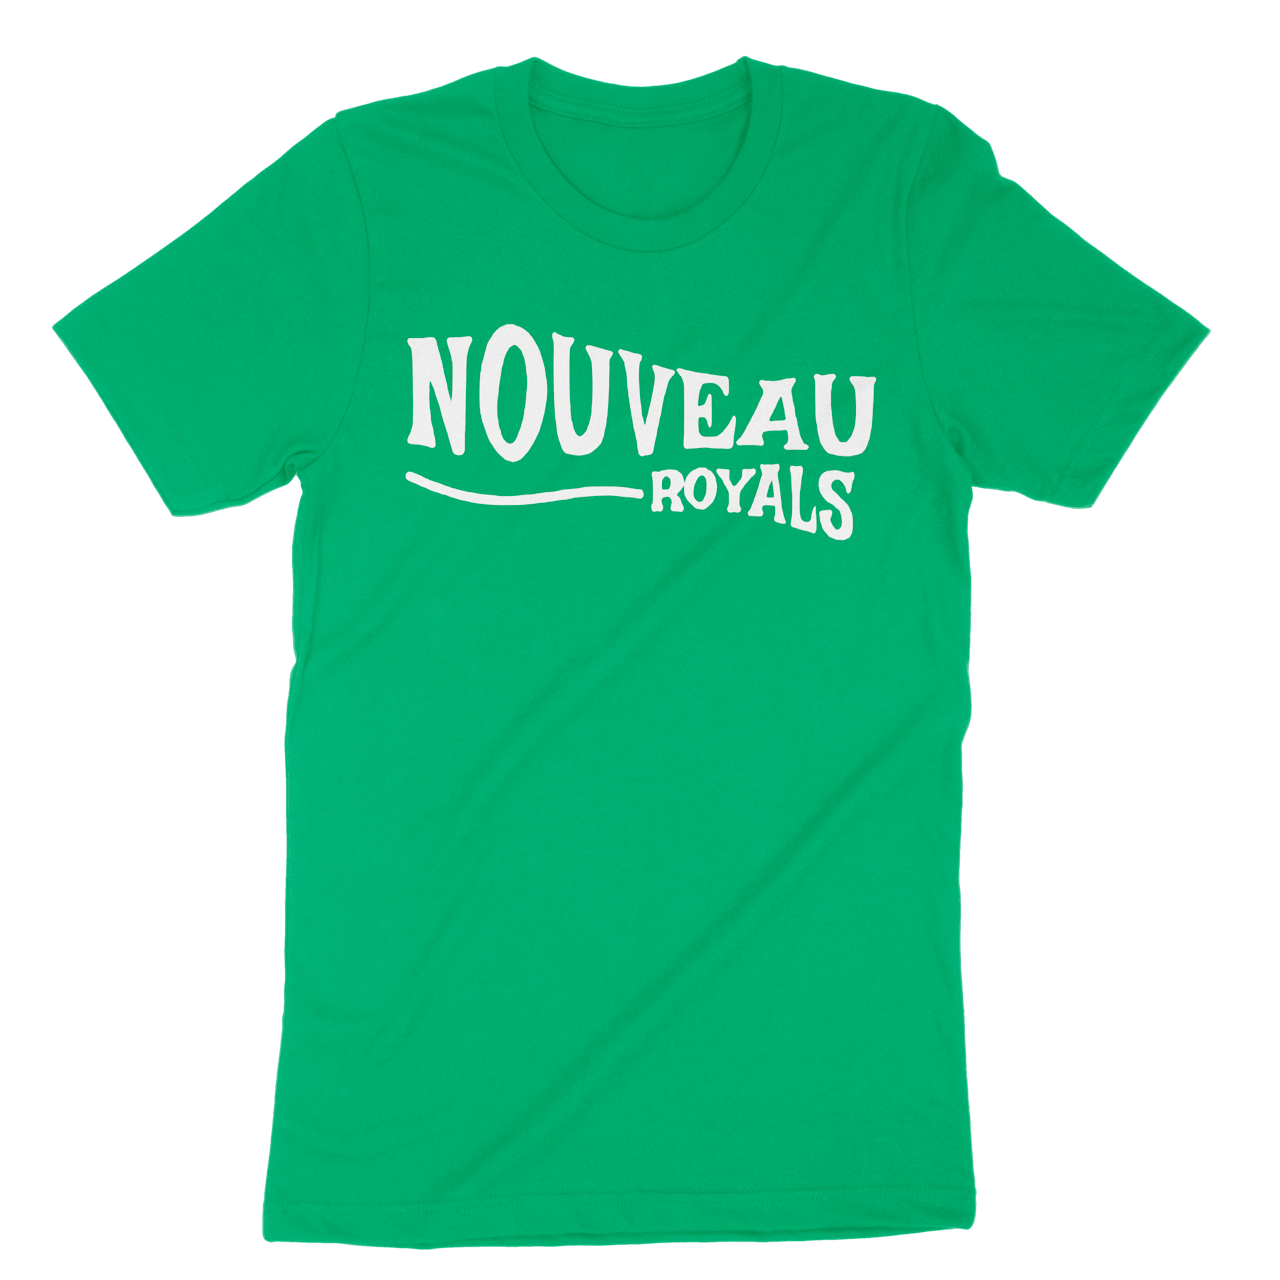 Unisex Success Nothing Less T shirt – Nouveau Royals